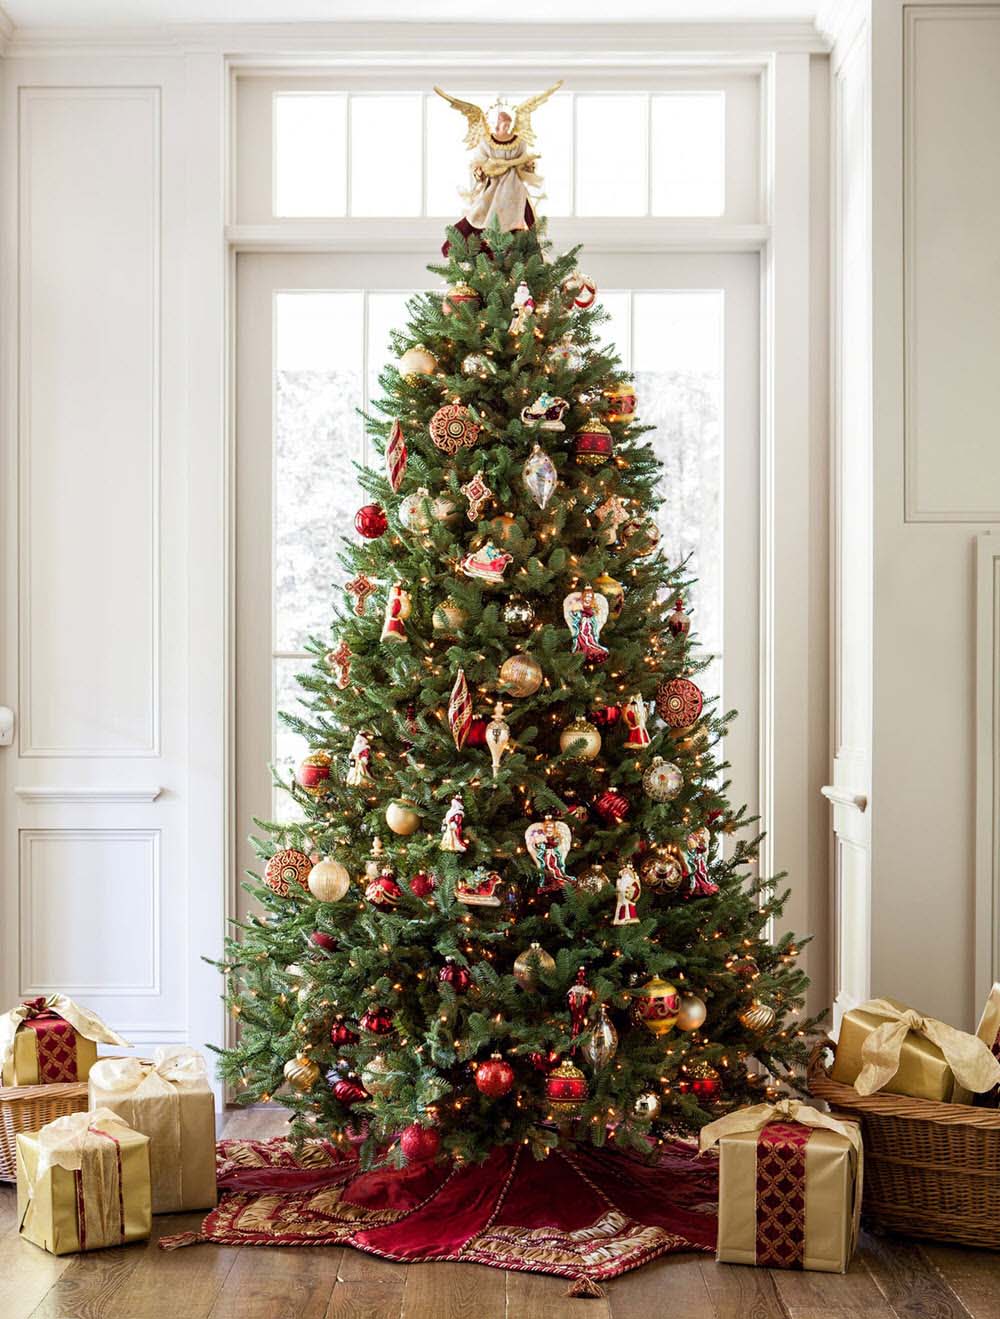 Hình ảnh cây thông được trang trí đẹp mắt cho mùa giáng sinh